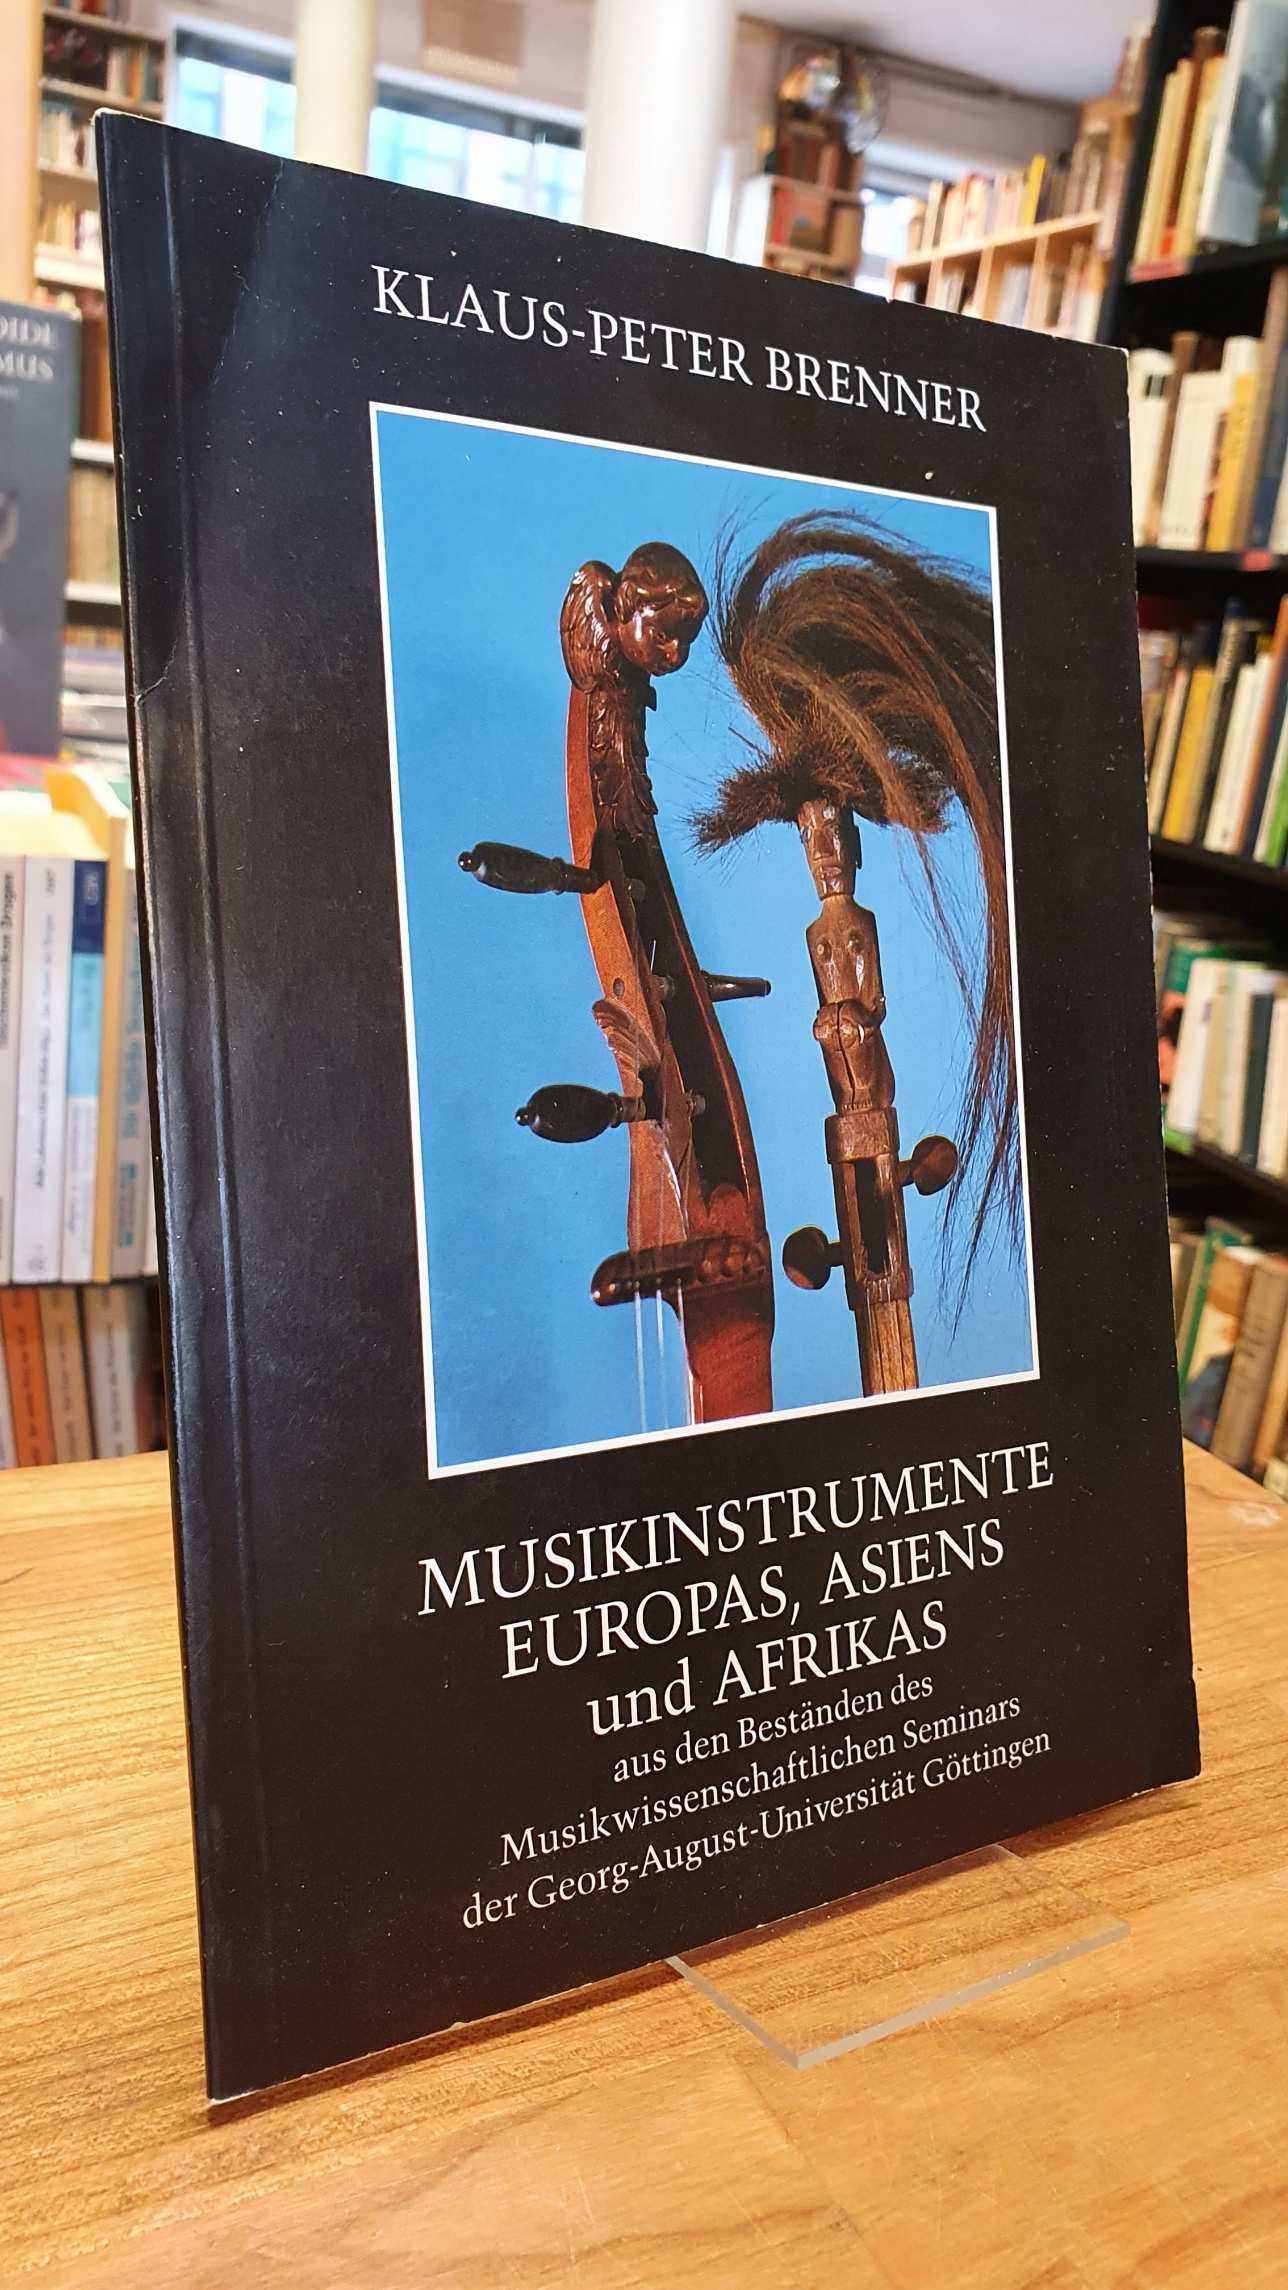 Brenner, Musikinstrumente Europas, Asiens und Afrikas aus den Beständen des Musi